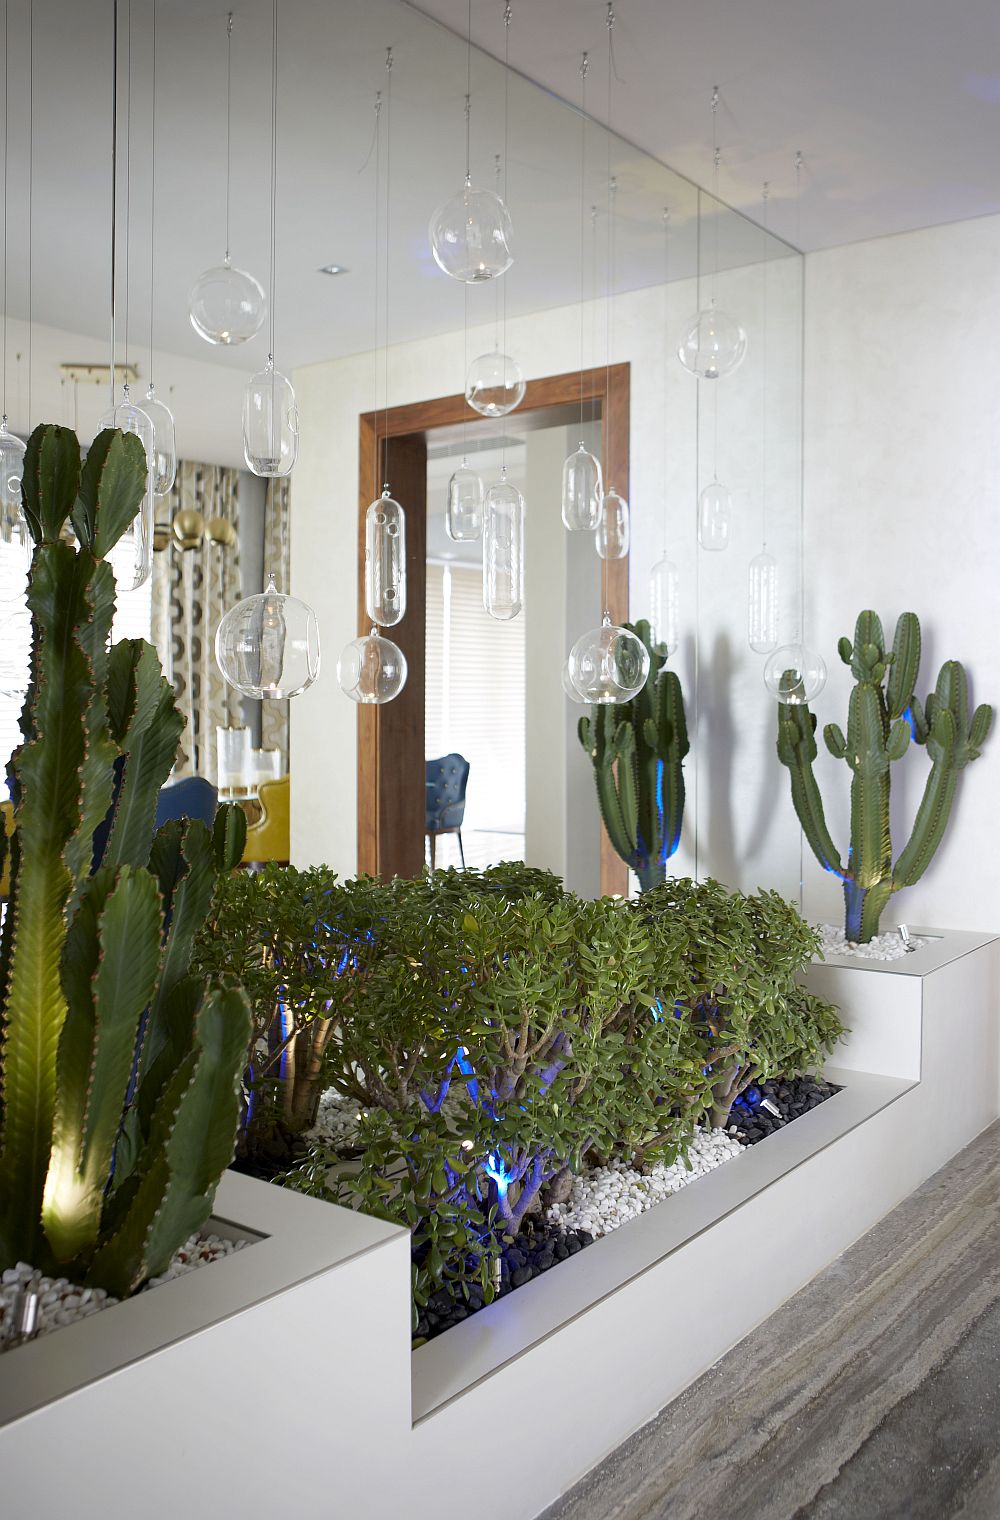 Вилла по проекту Nikki B Signature Interiors - экзотические растения в интерьере гостиной